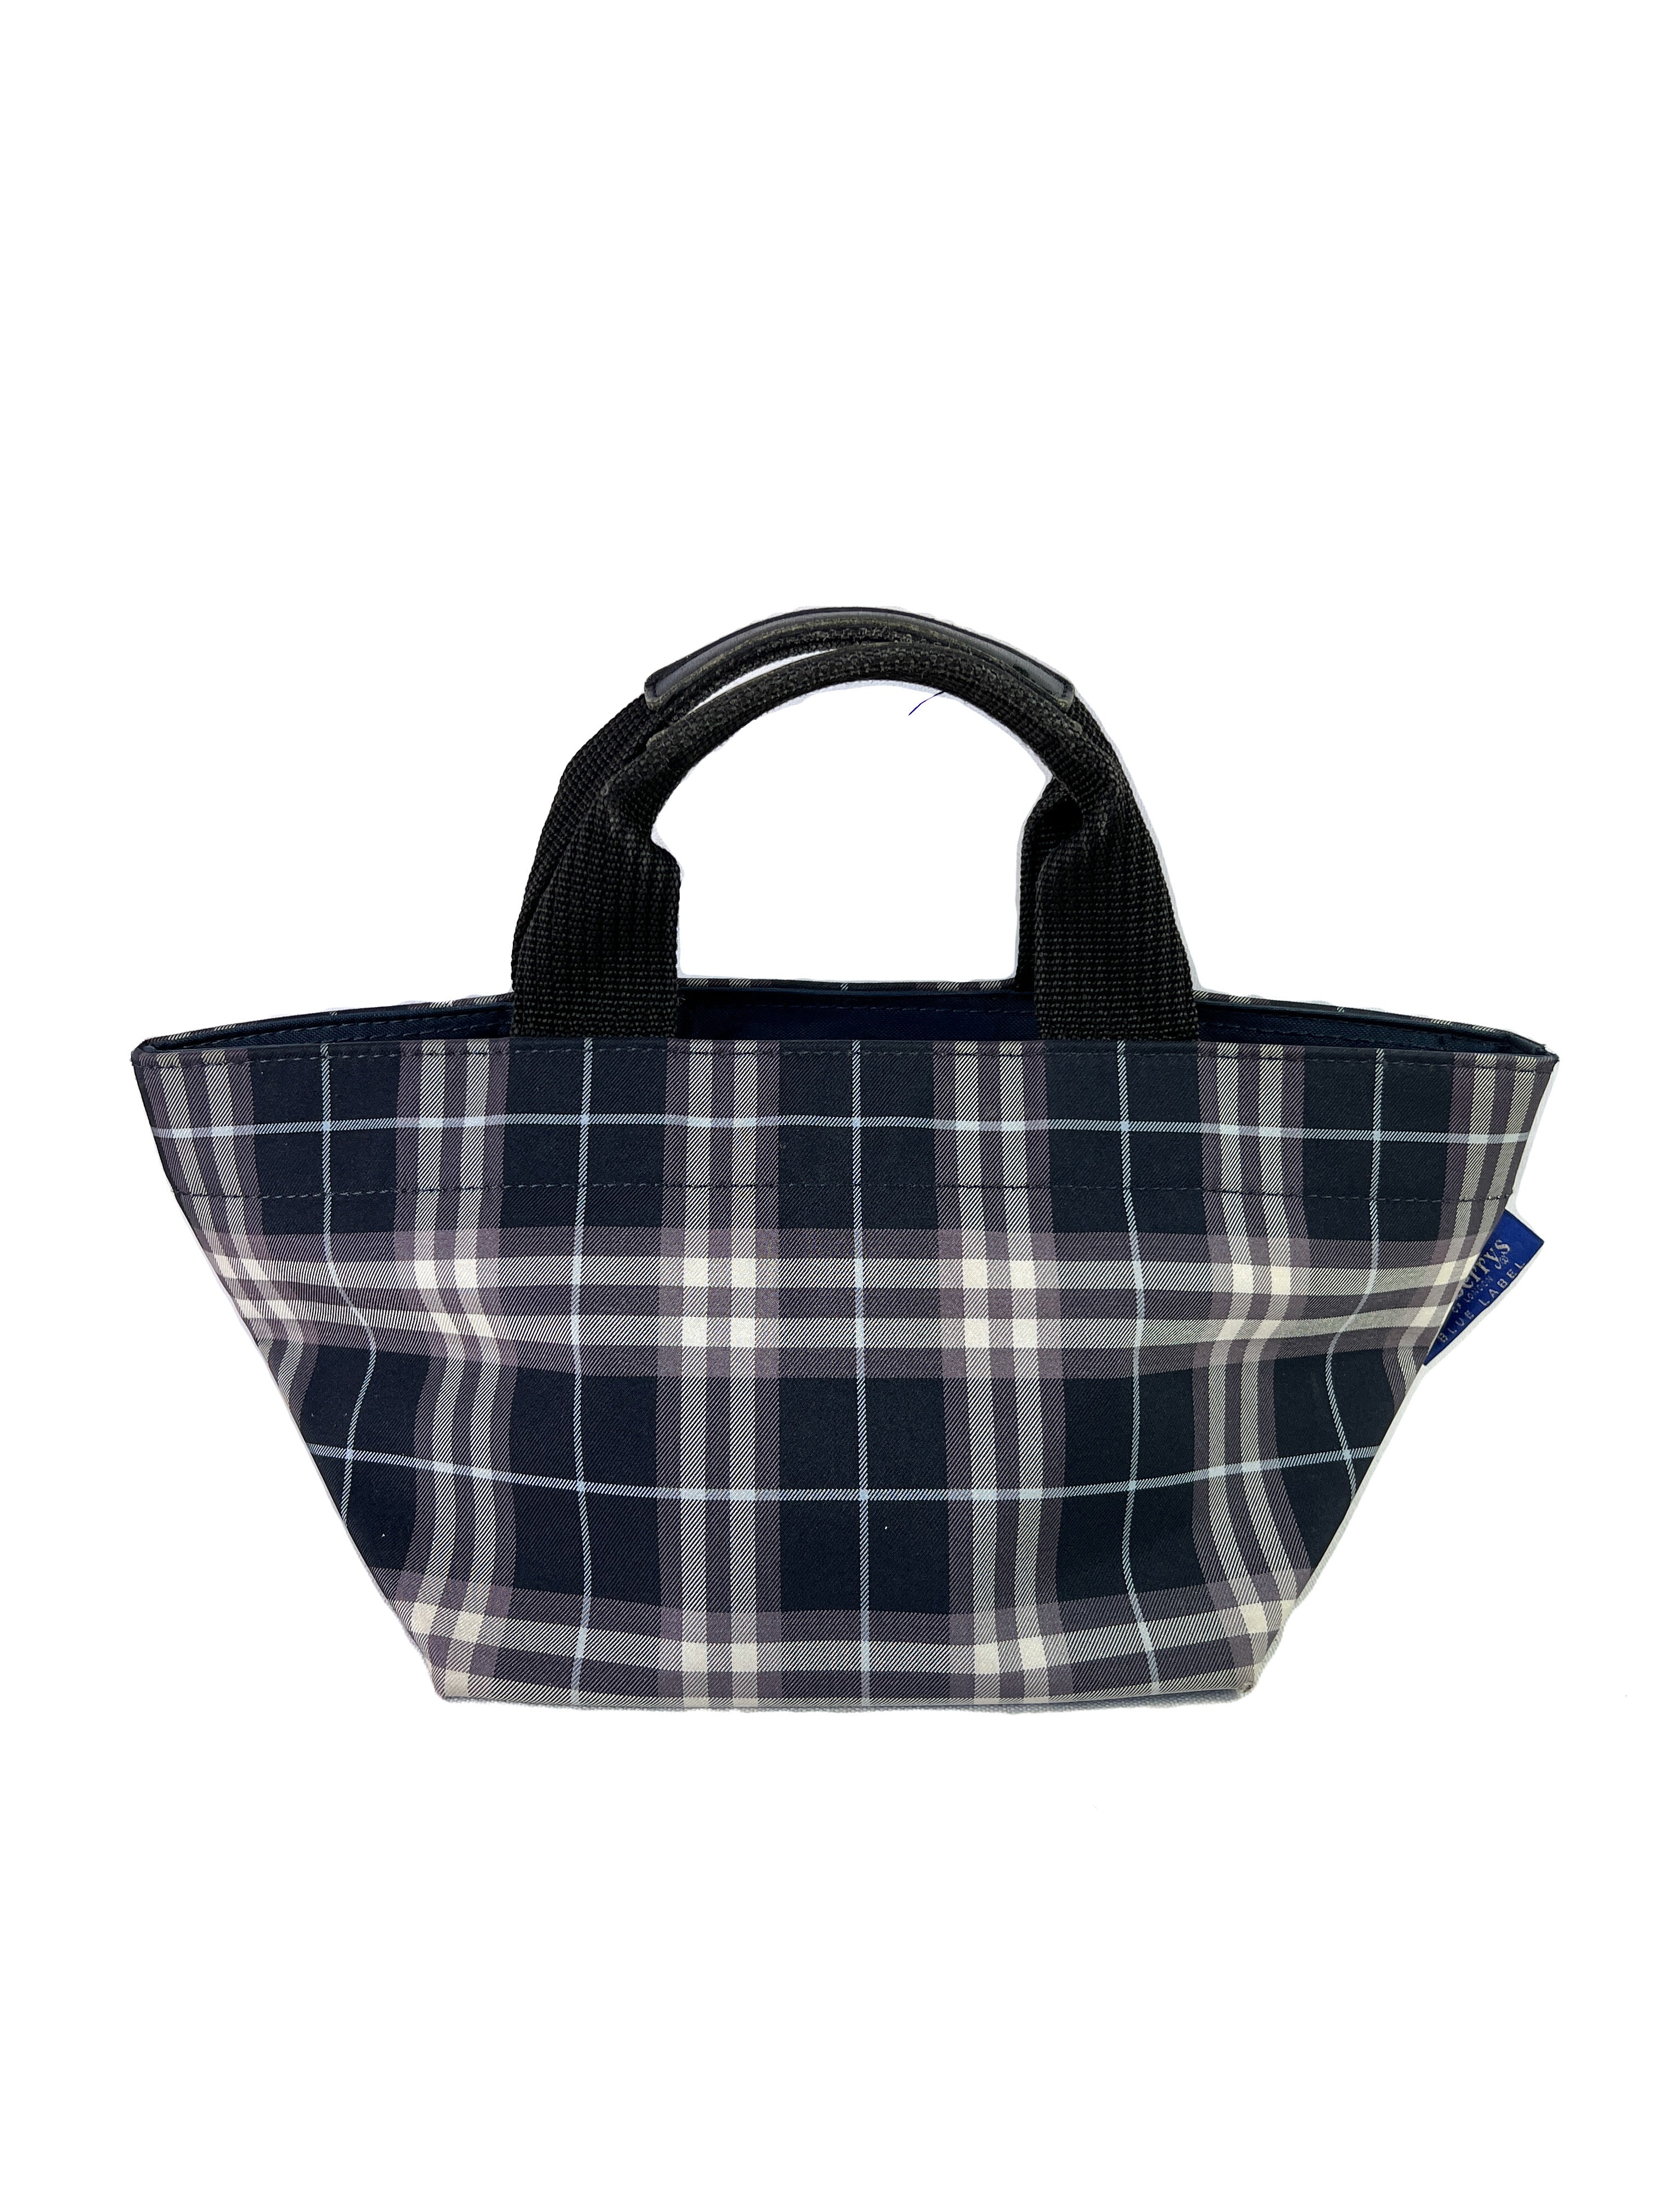 Burberry Plaid Designer Handbag – Best Friends Consignment